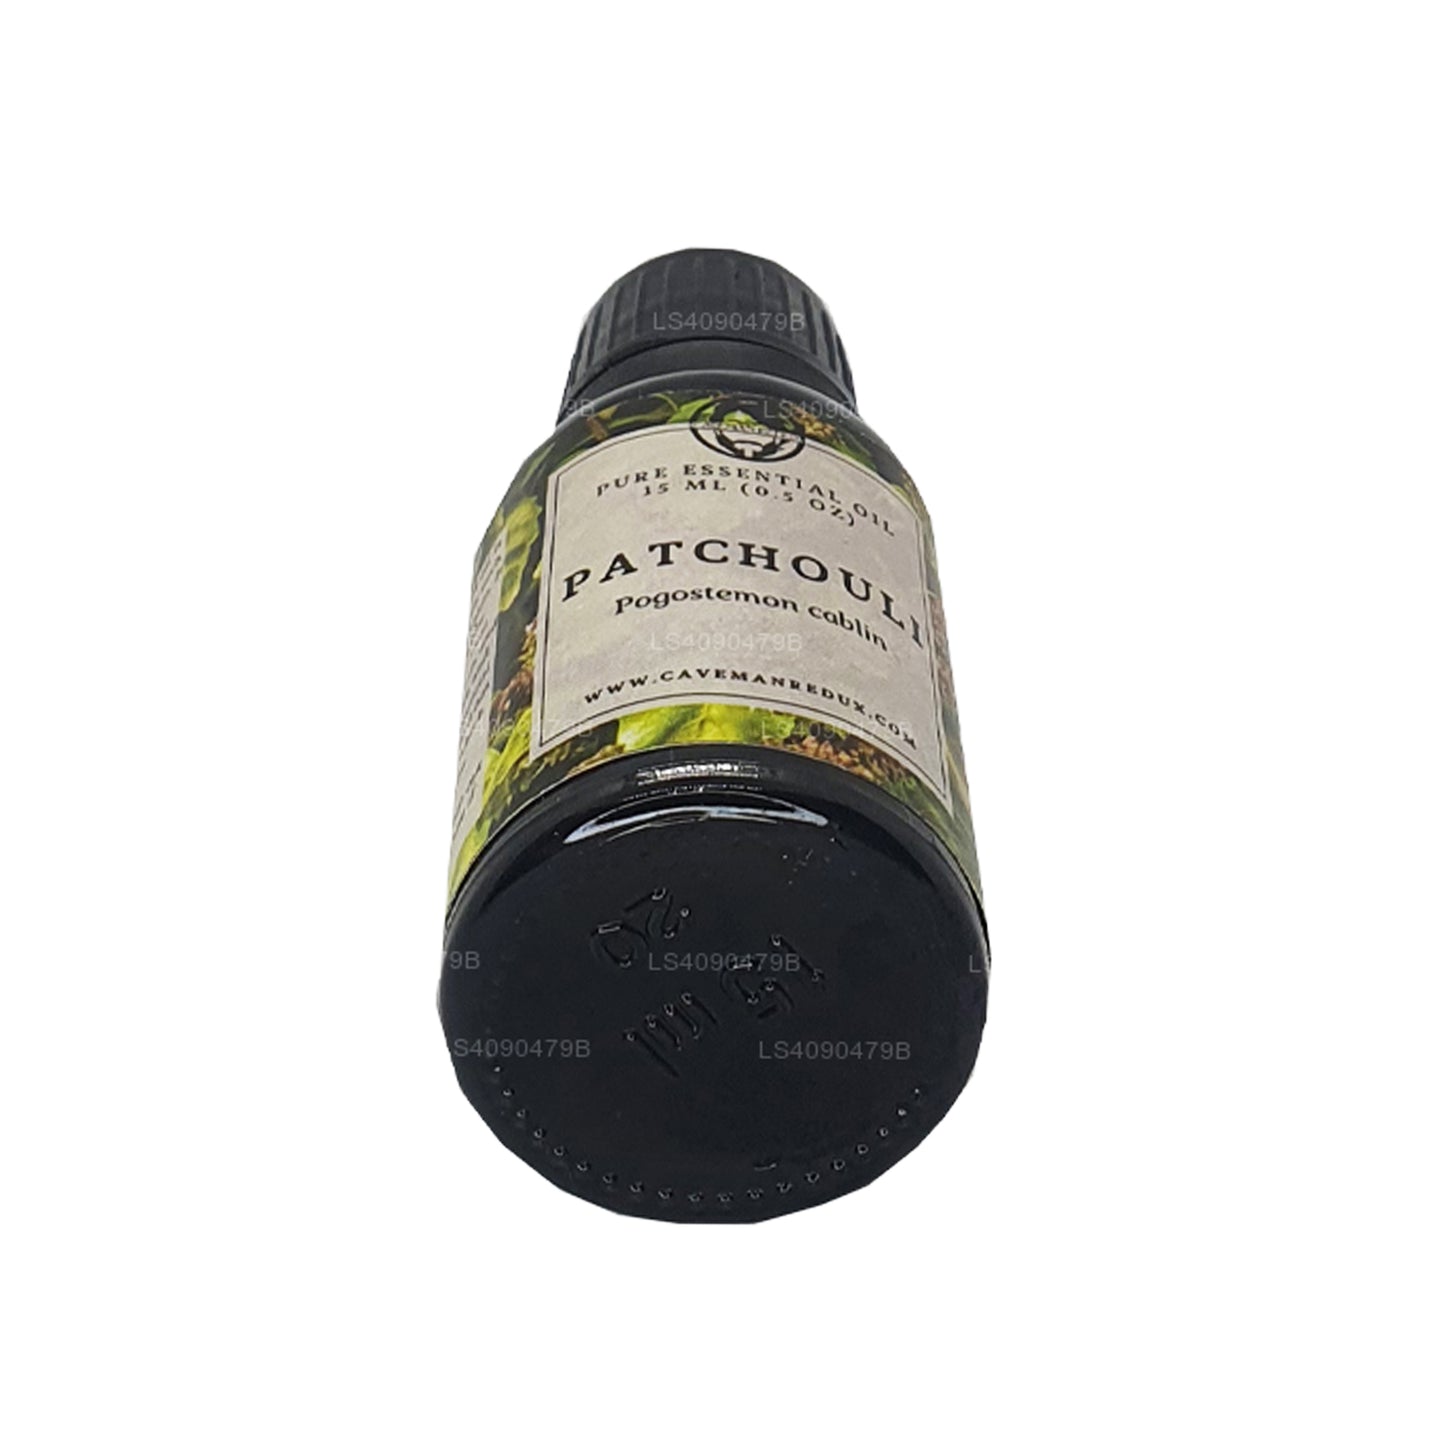 Lakpura Patchouli æterisk olie (15 ml)